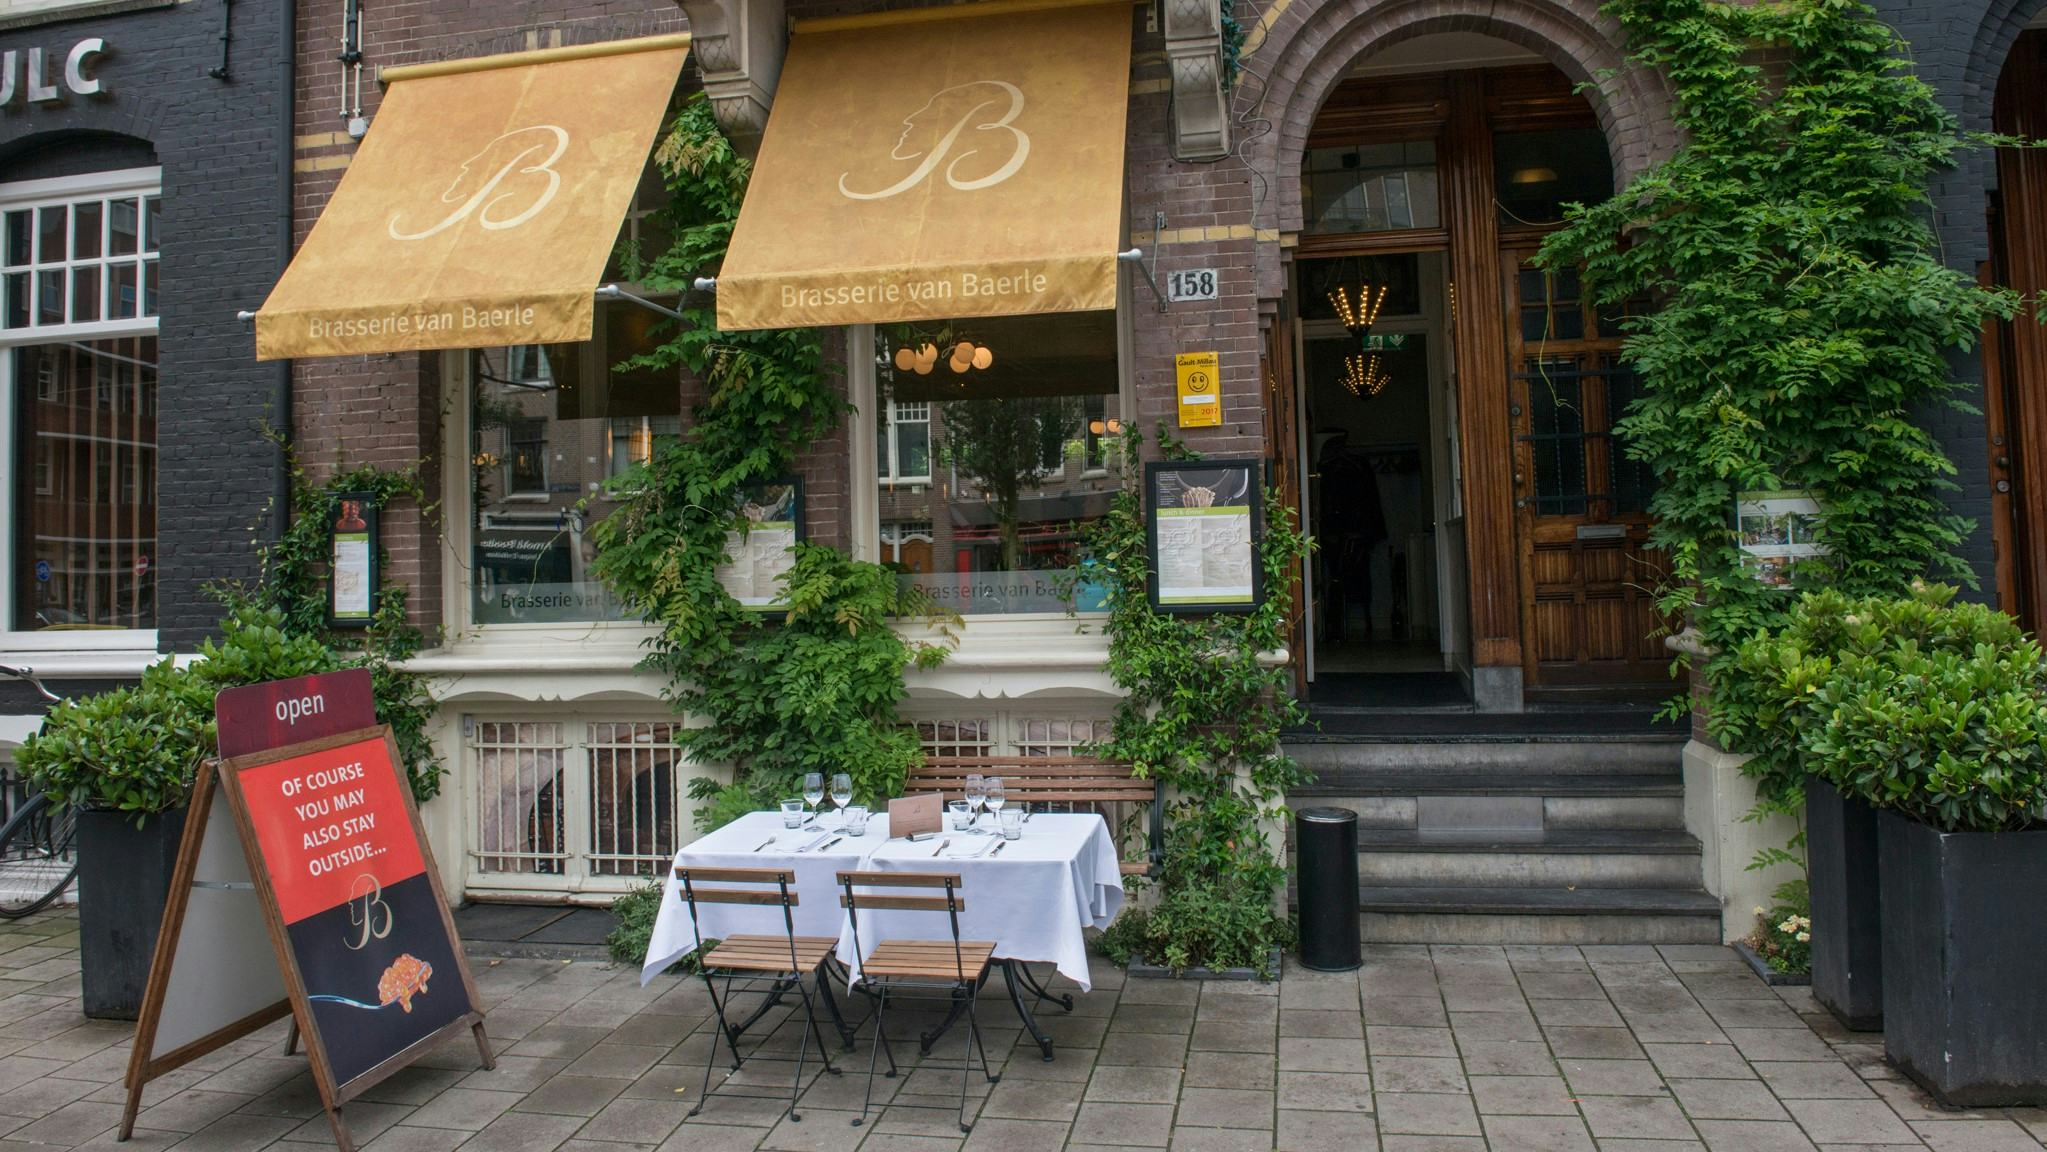 Brasserie van Baerle, Amsterdam.